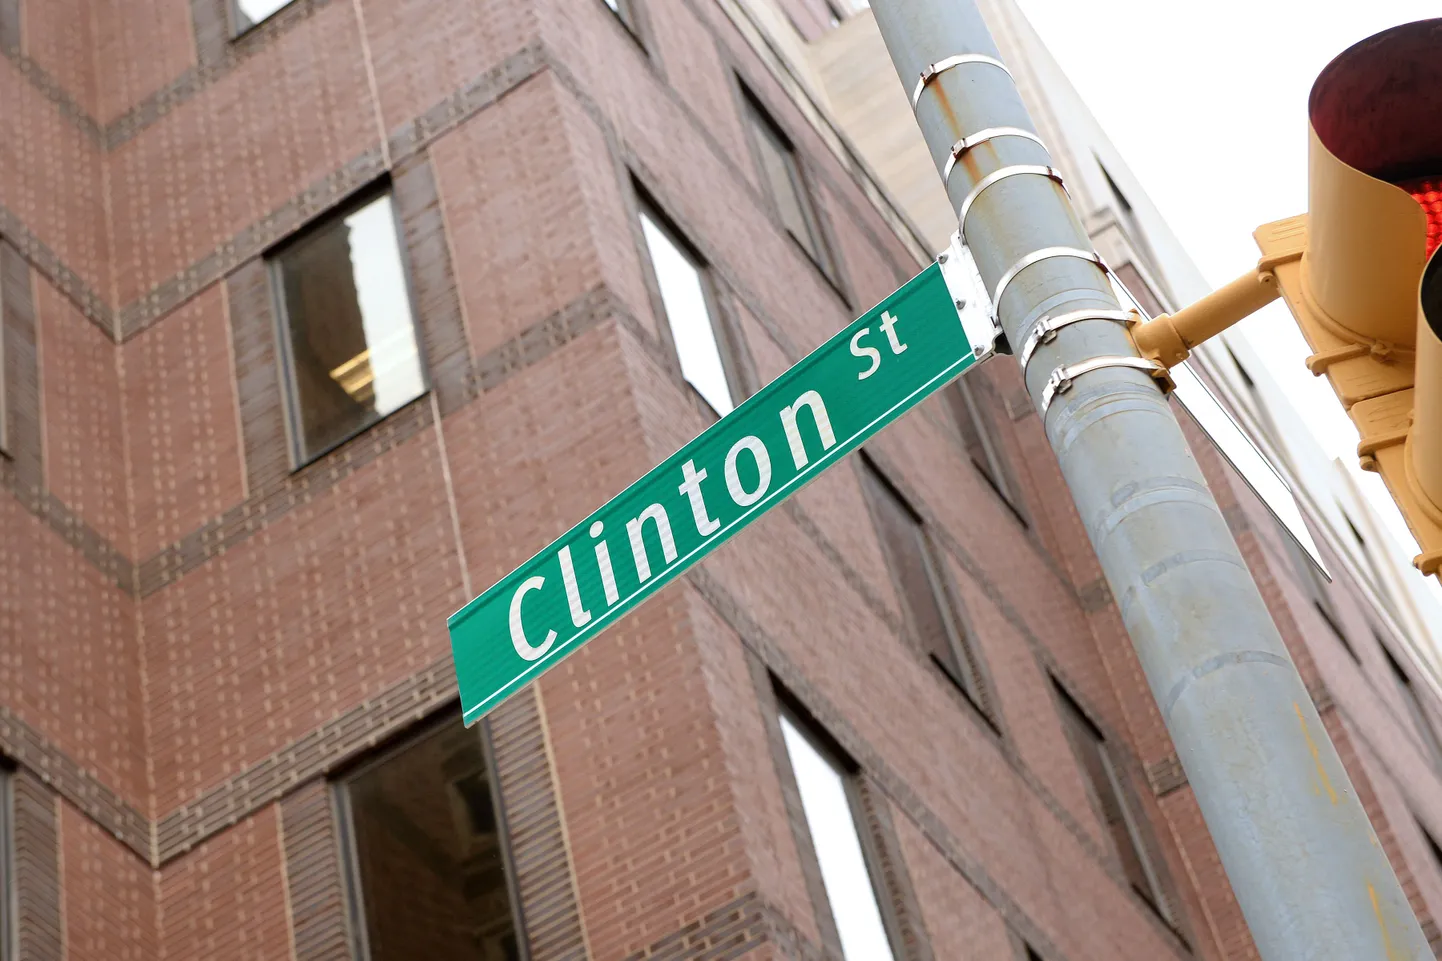 Clintoni tänav New Yorgis jookseb paralleelselt Cadman Plaza Westiga, kus Hillary Clintoni meeskond rentis omale ruumid, mis võtavad One Pierrepont Plazas enda alla kaks korrust.